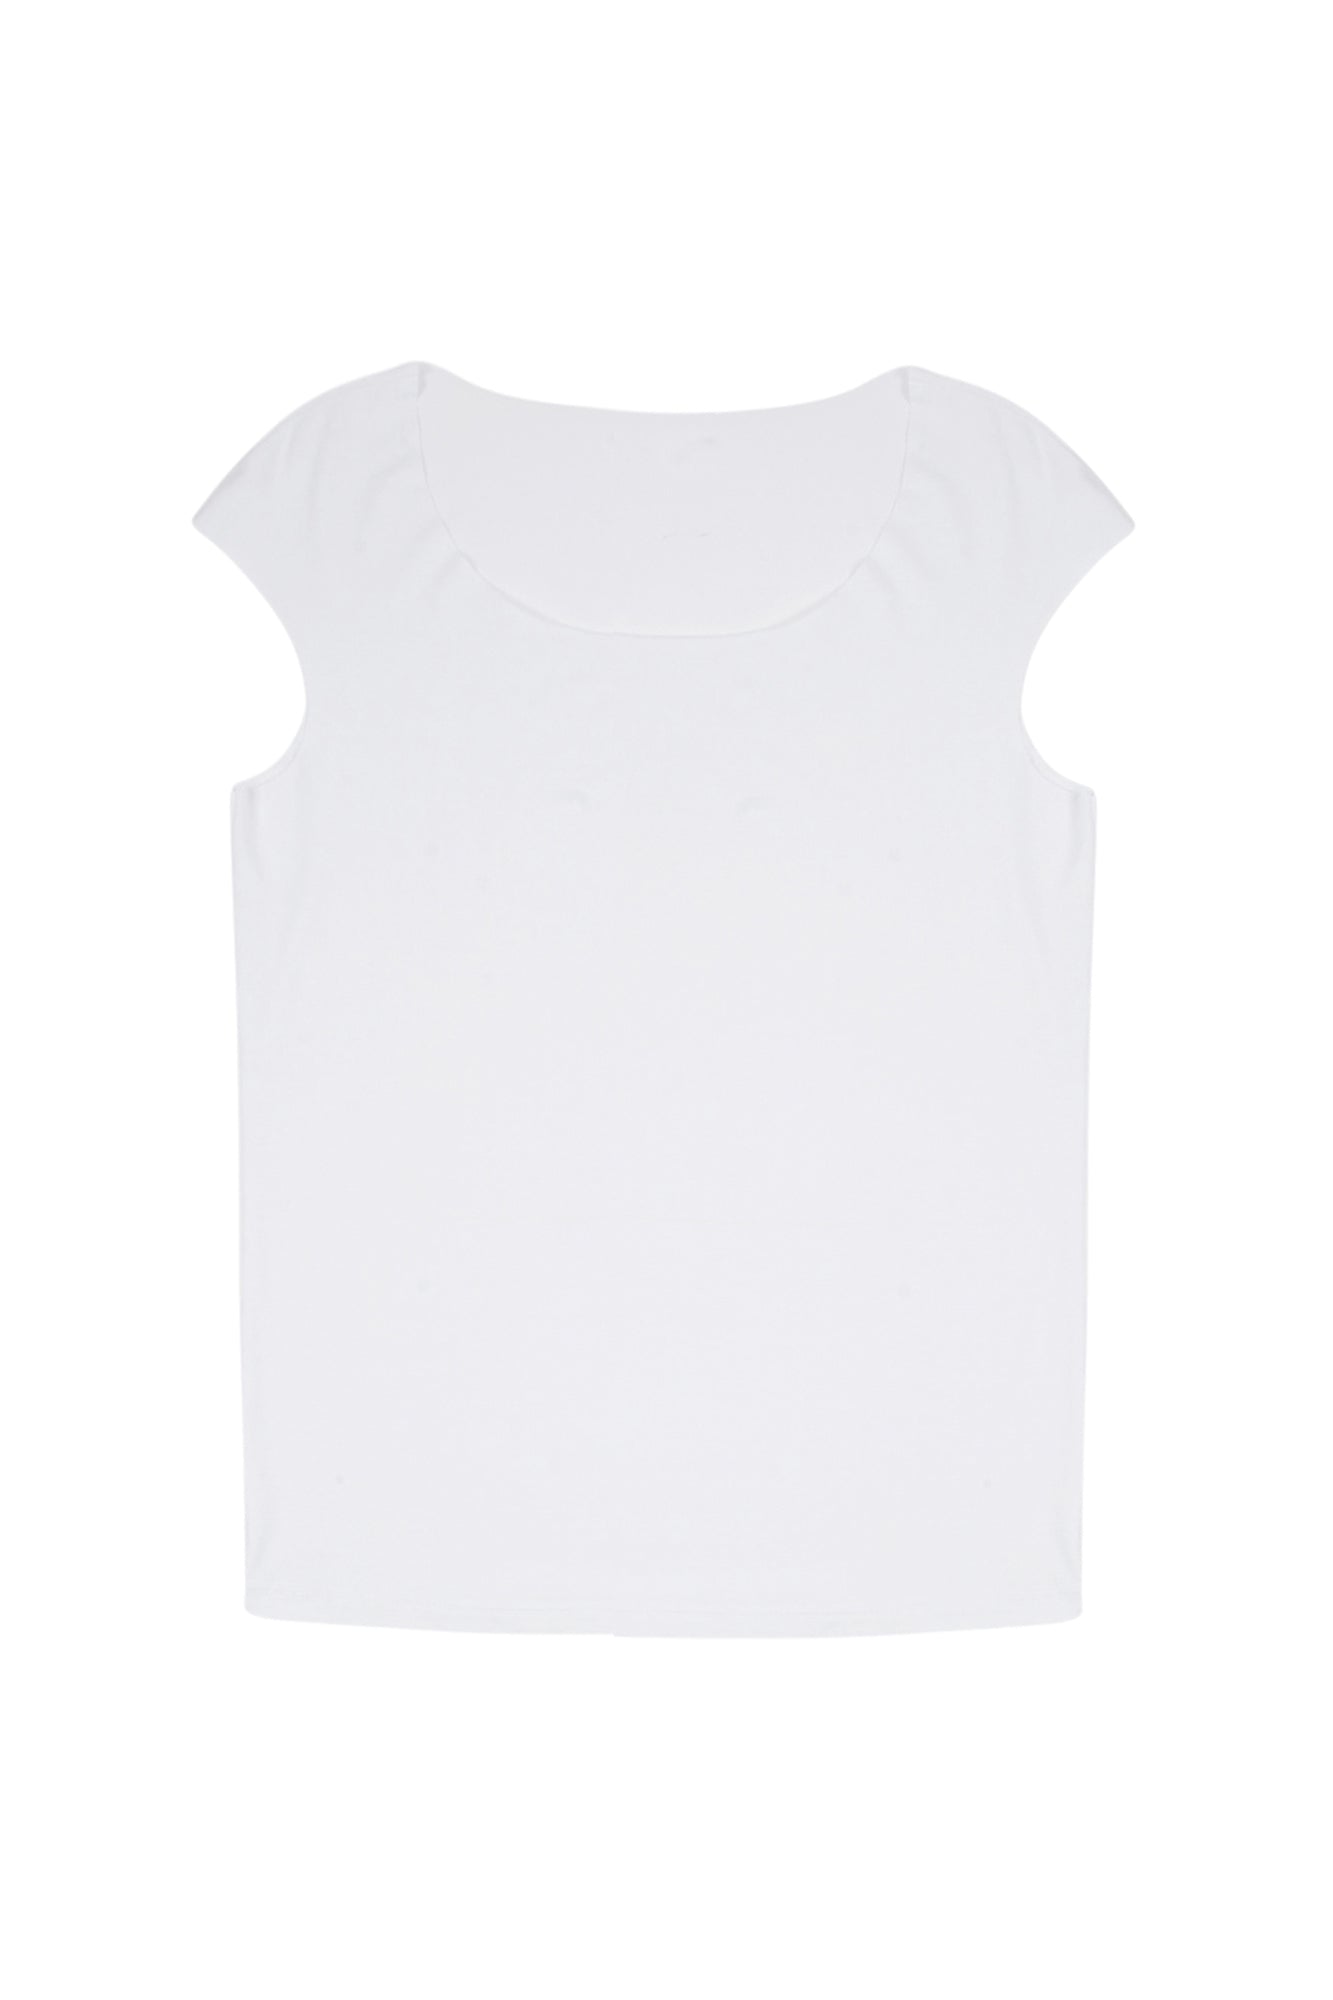 La Femme Blanche - T-shirt - 431479 - Bianco